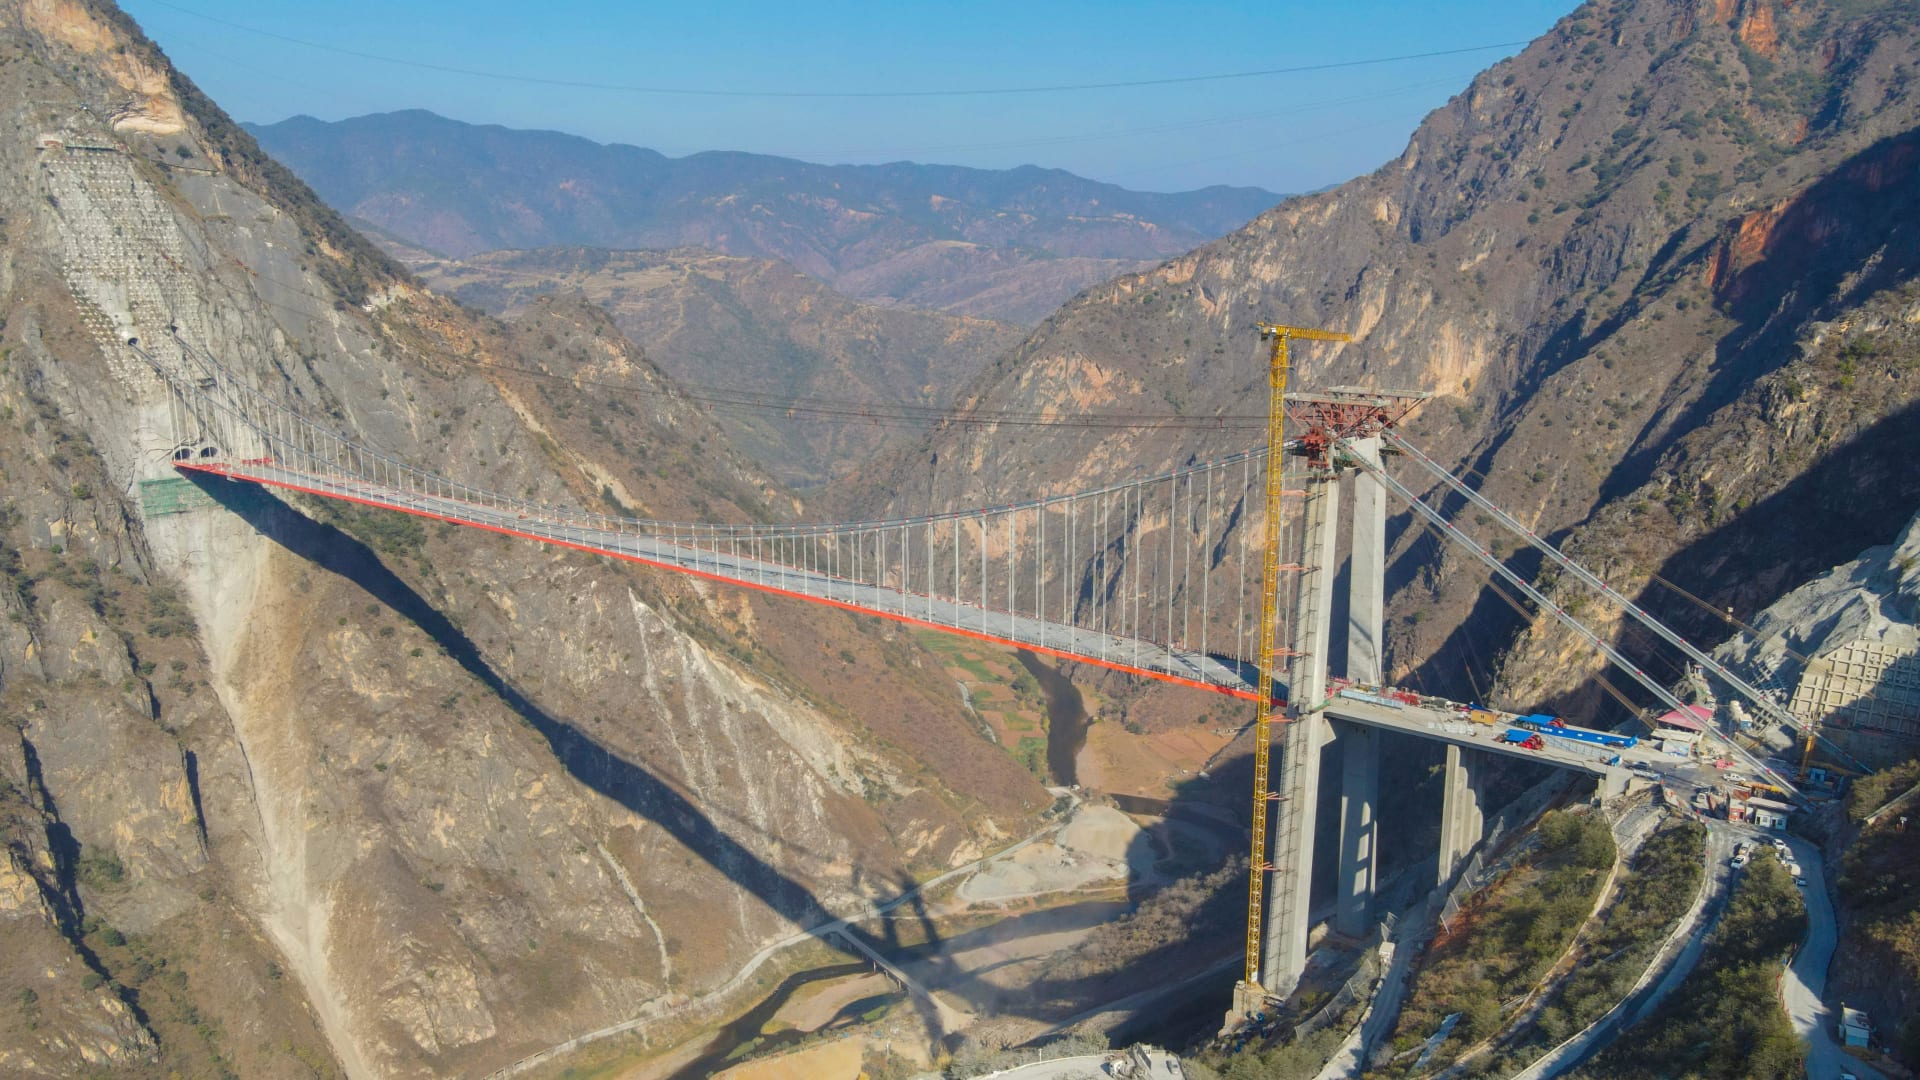 استغرق بناؤه 7 أعوام وبطول 2000 متر.. شاهد الجسر الذي يربط الصين وروسيا